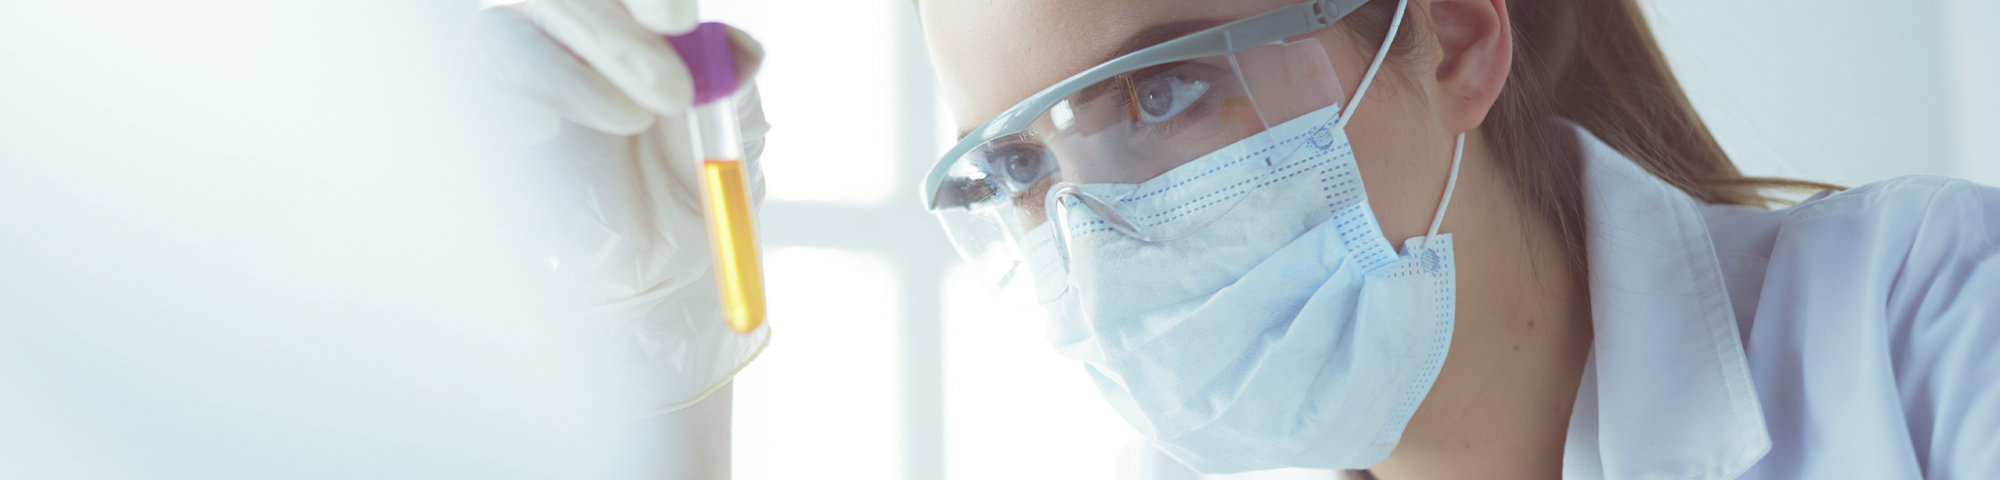 Frau mit Mundschutz untersucht Probe im Reagenzglas